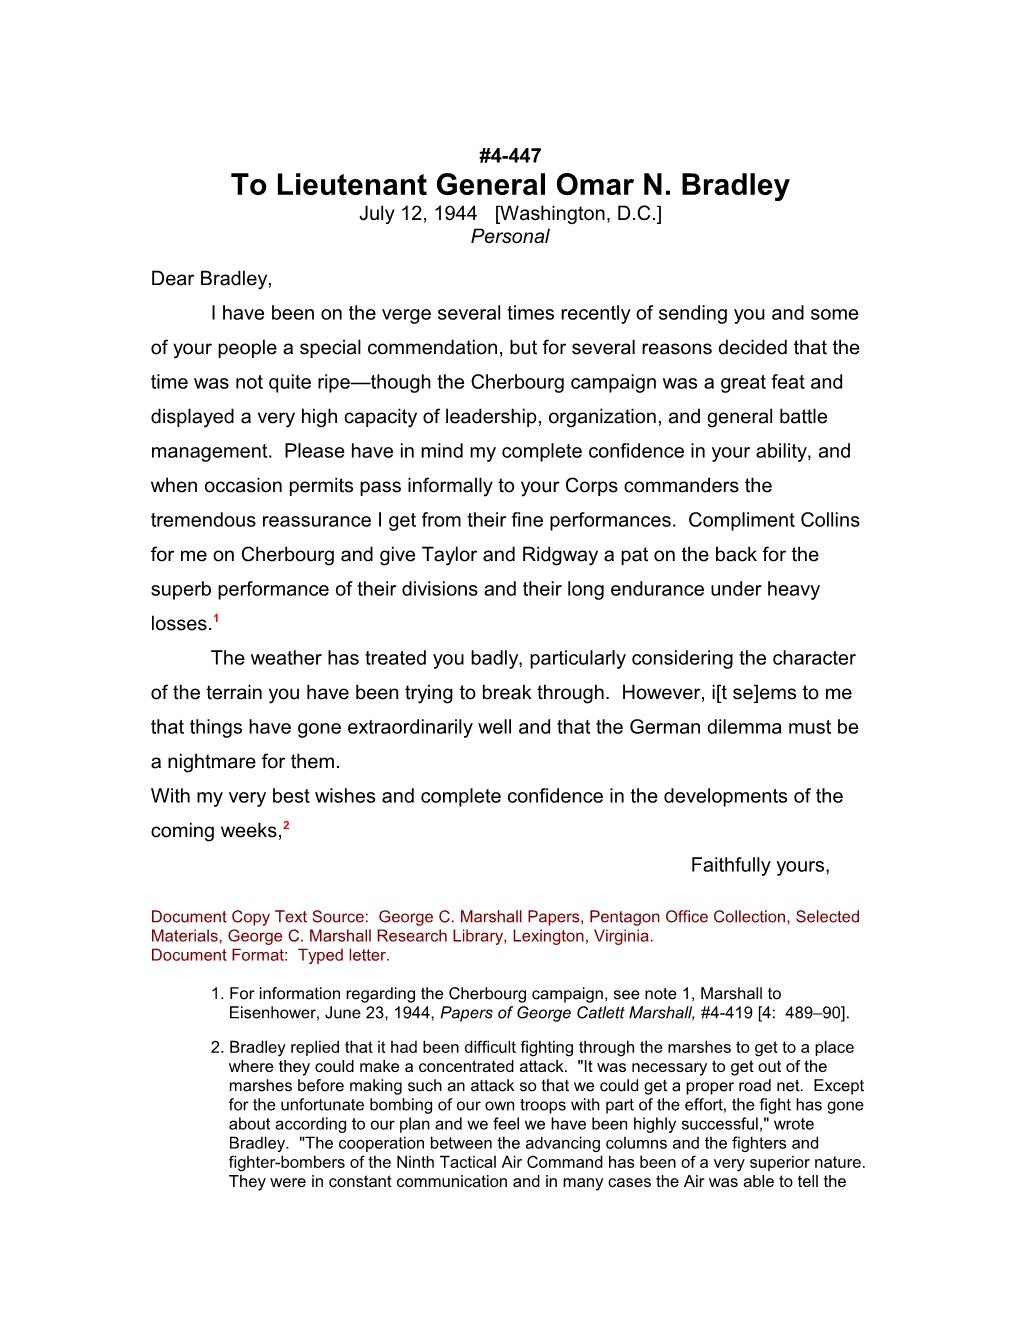 To Lieutenant General Omar N. Bradley